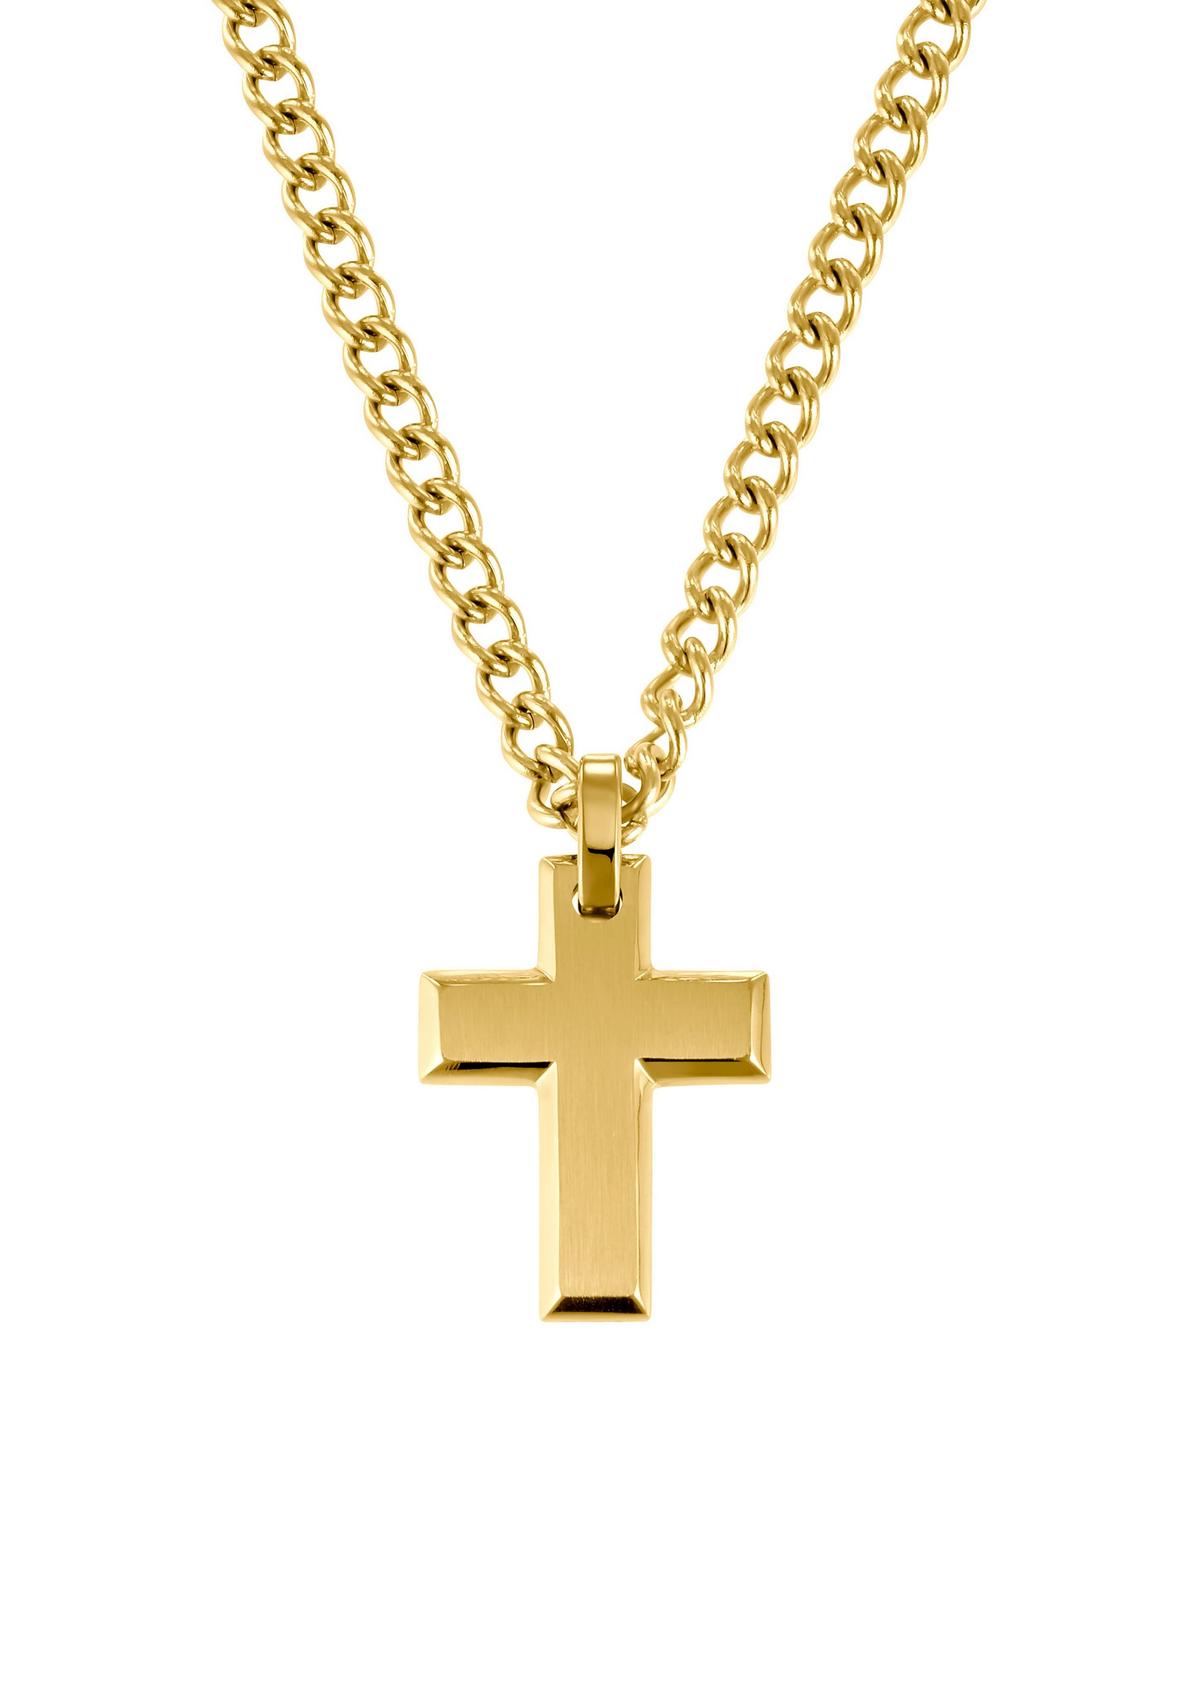 Halskette gold - Kreuz mit